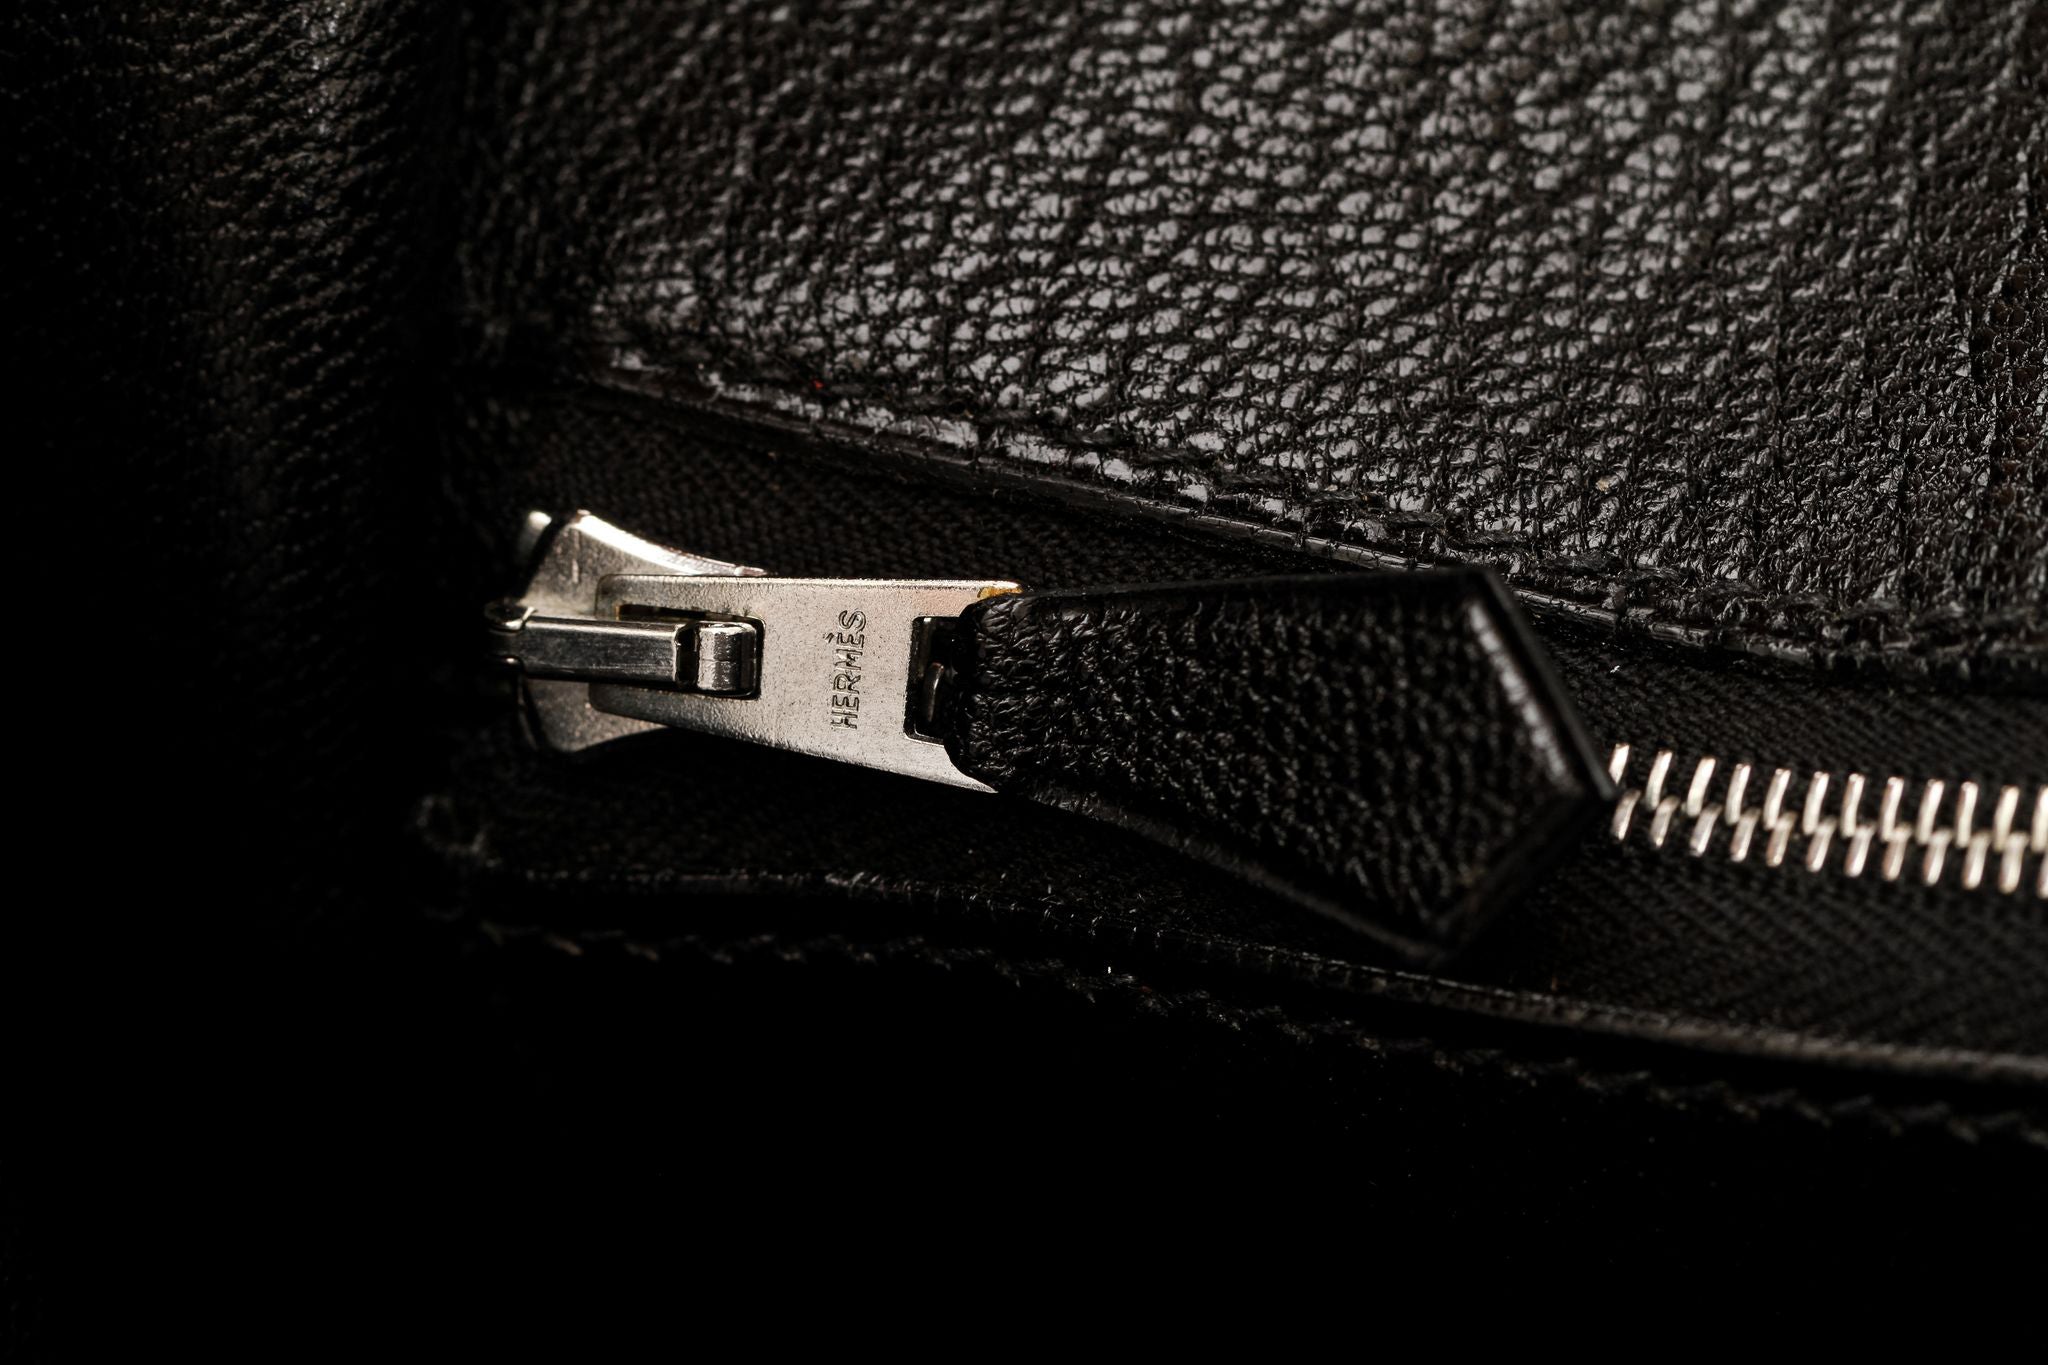 Hermes 35cm Black Chevre de Coromandel Leather Sellier Kelly Bag